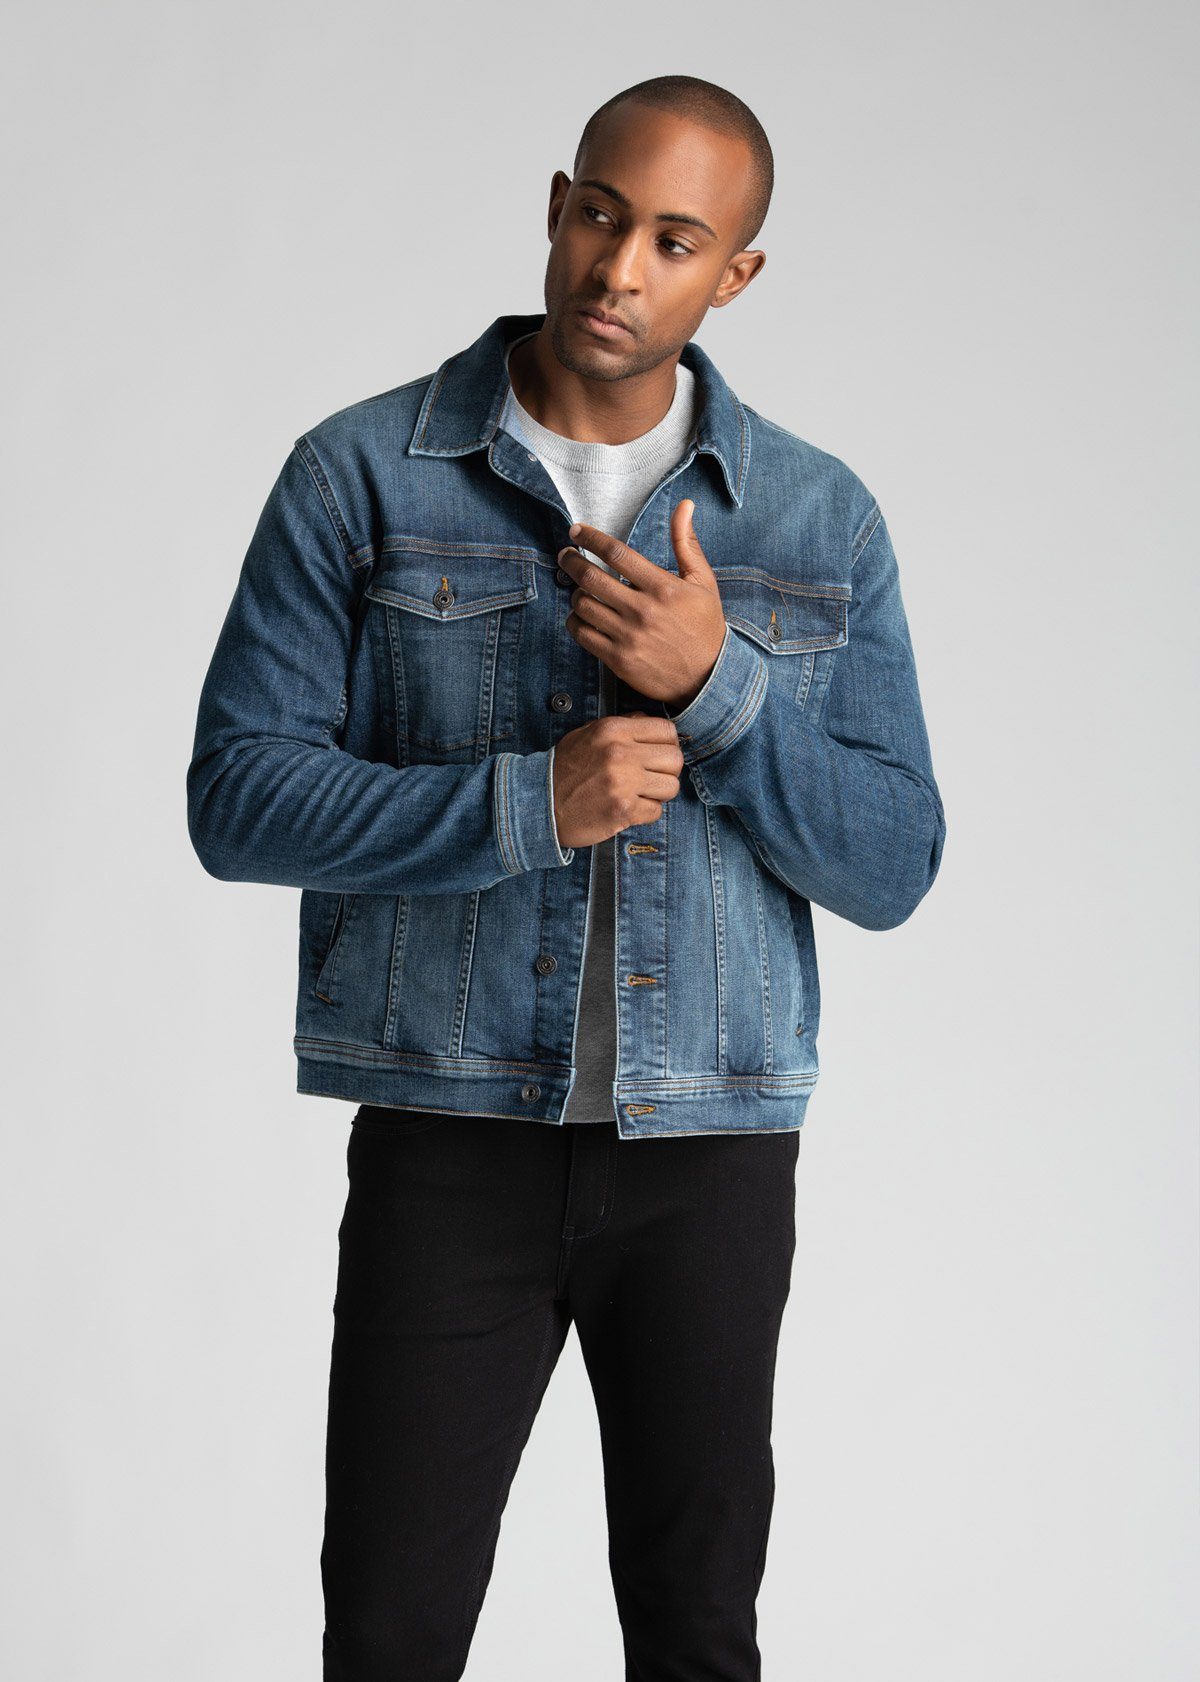 Jean Jacket Outfits For Men | Denim jacket men outfit, Jean jacket outfits, Mens  fashion denim